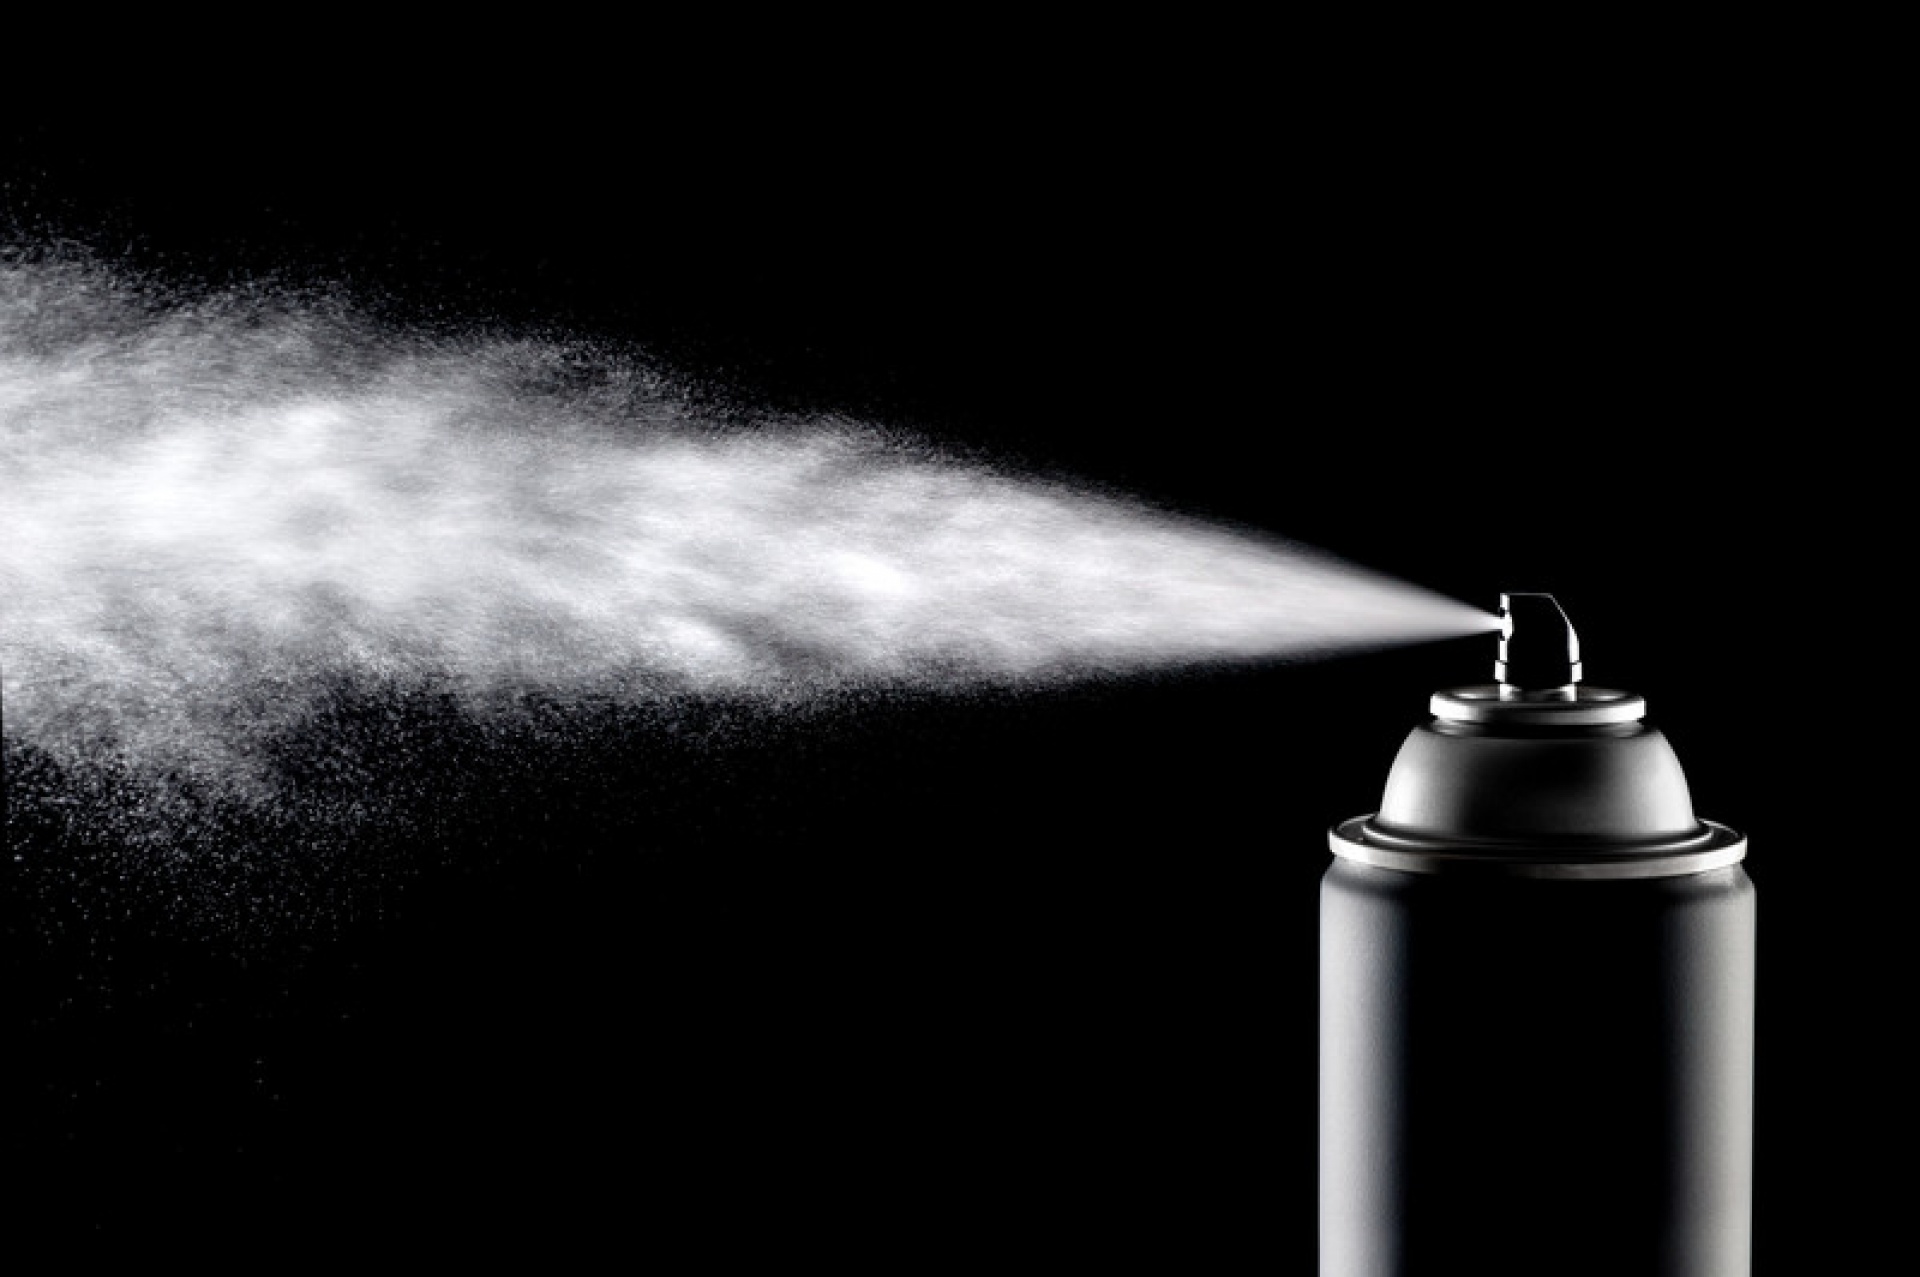 aerosol can spraying